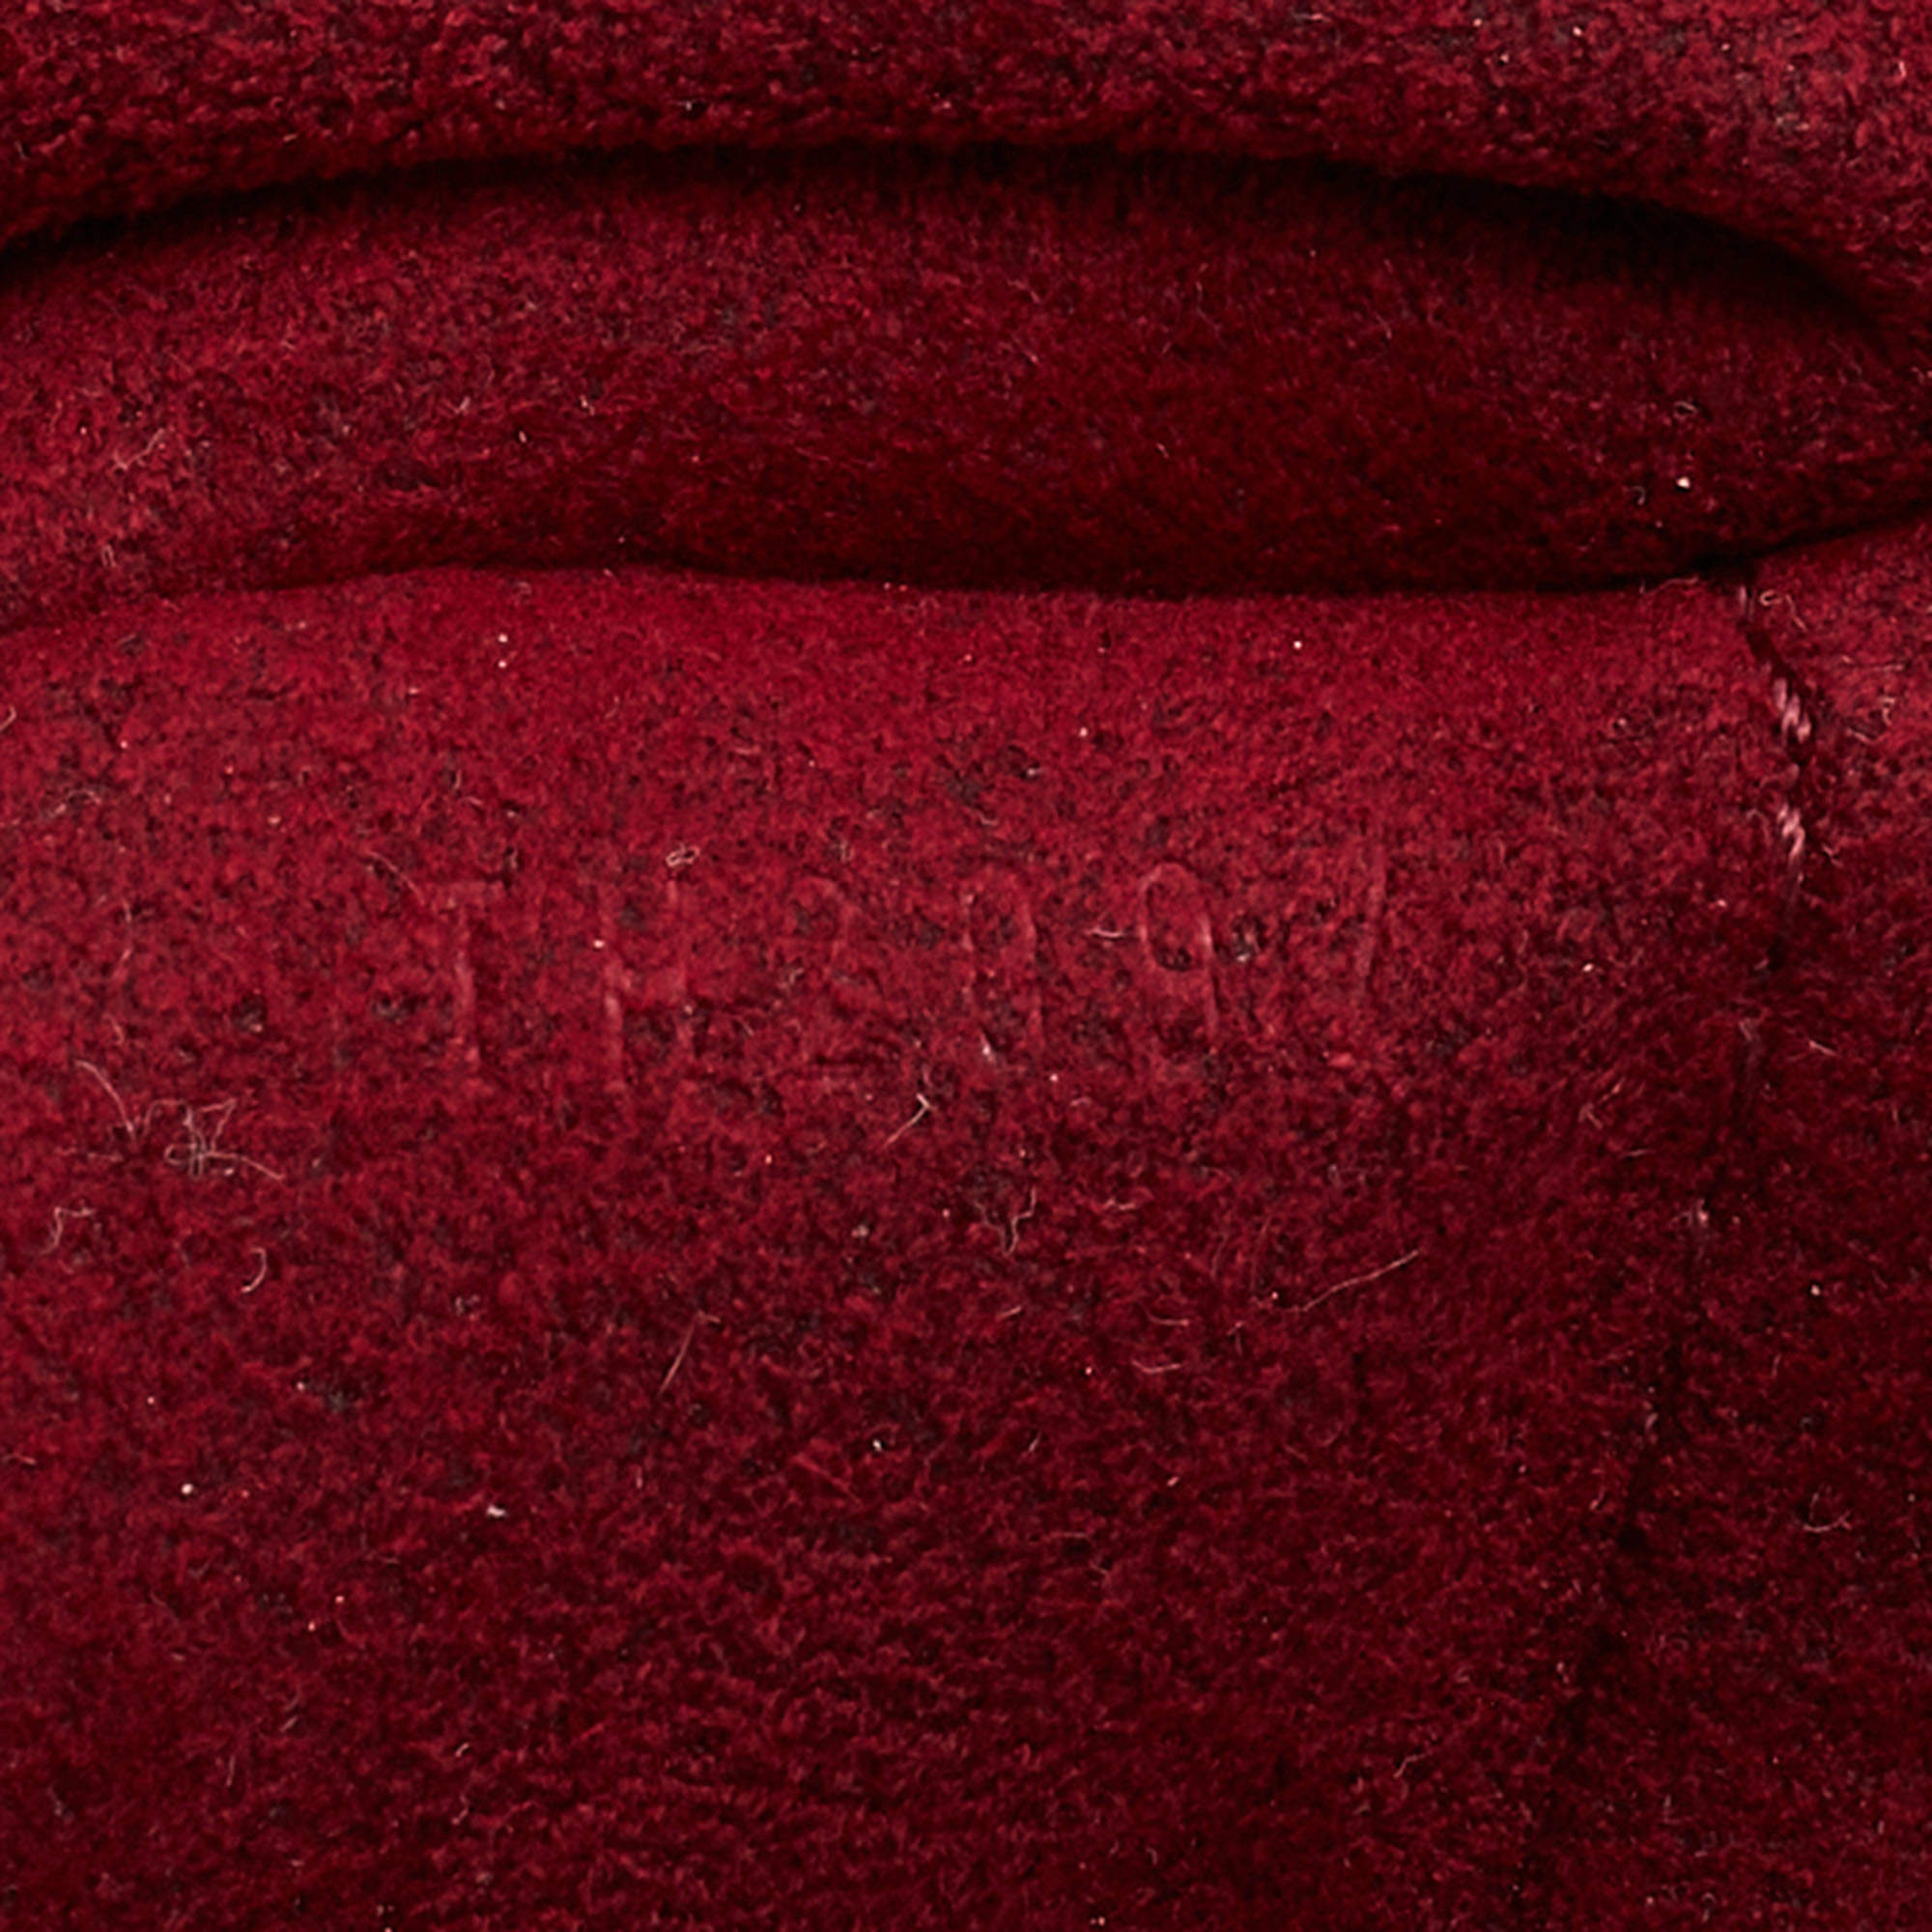 Louis Vuitton Mäntel aus Wolle - Multicolor - Größe 36 - 29827525